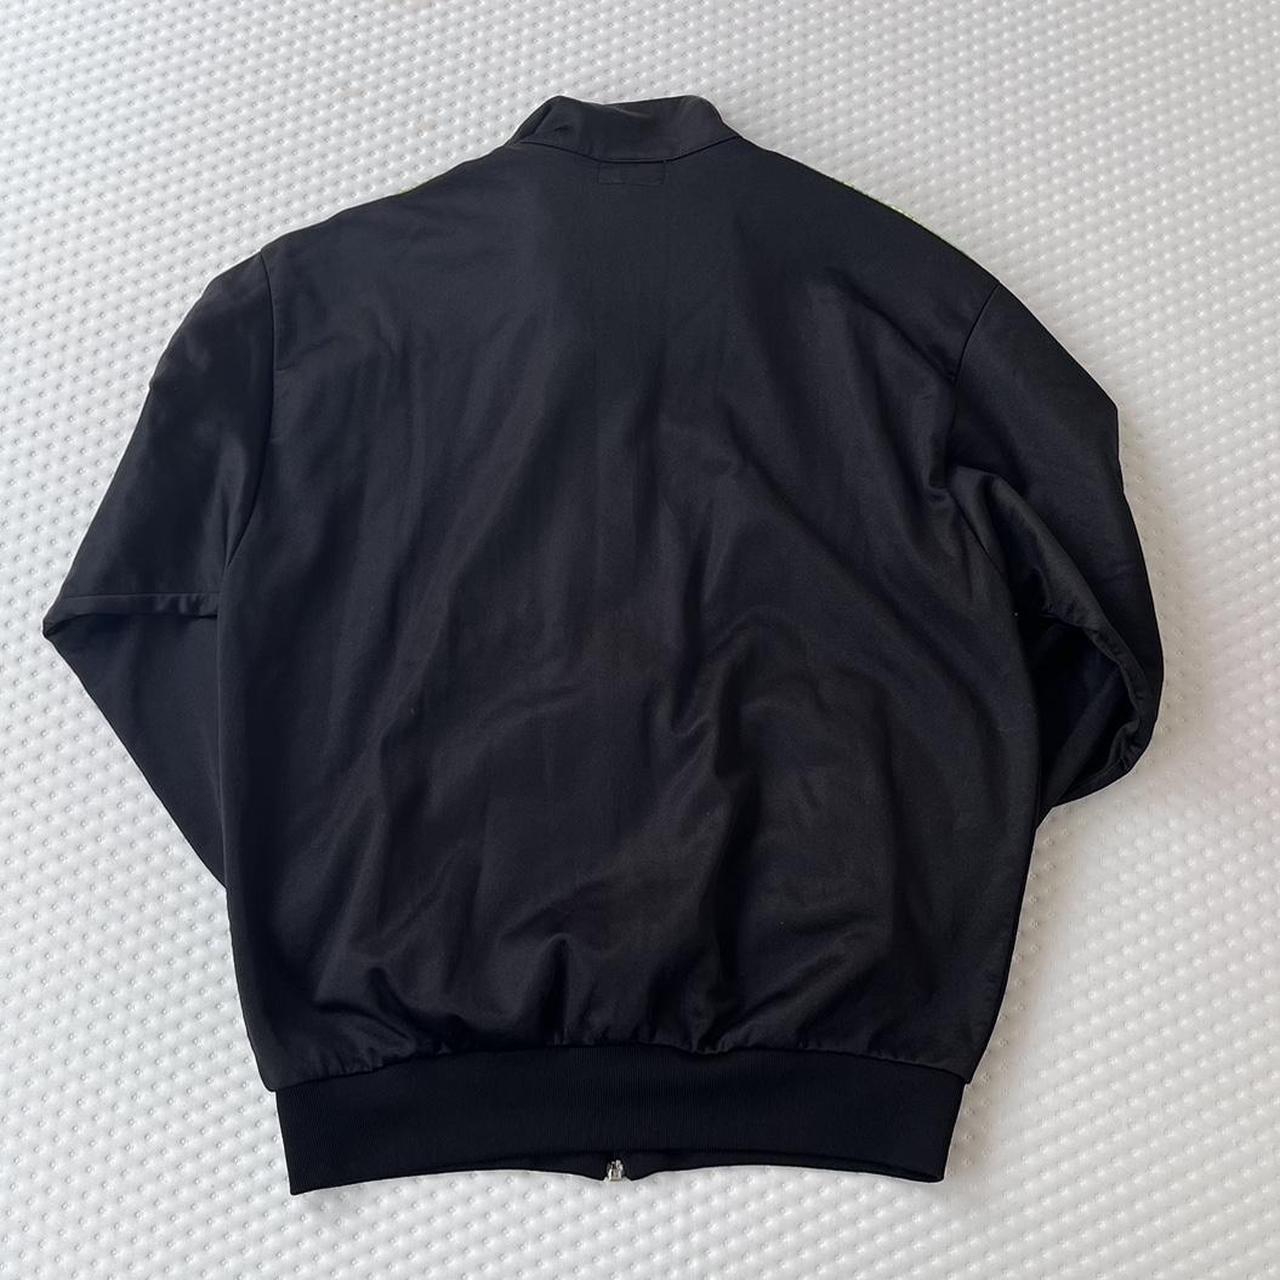 Vintage 90s Asics track jacket Tagged 50 Fits... - Depop